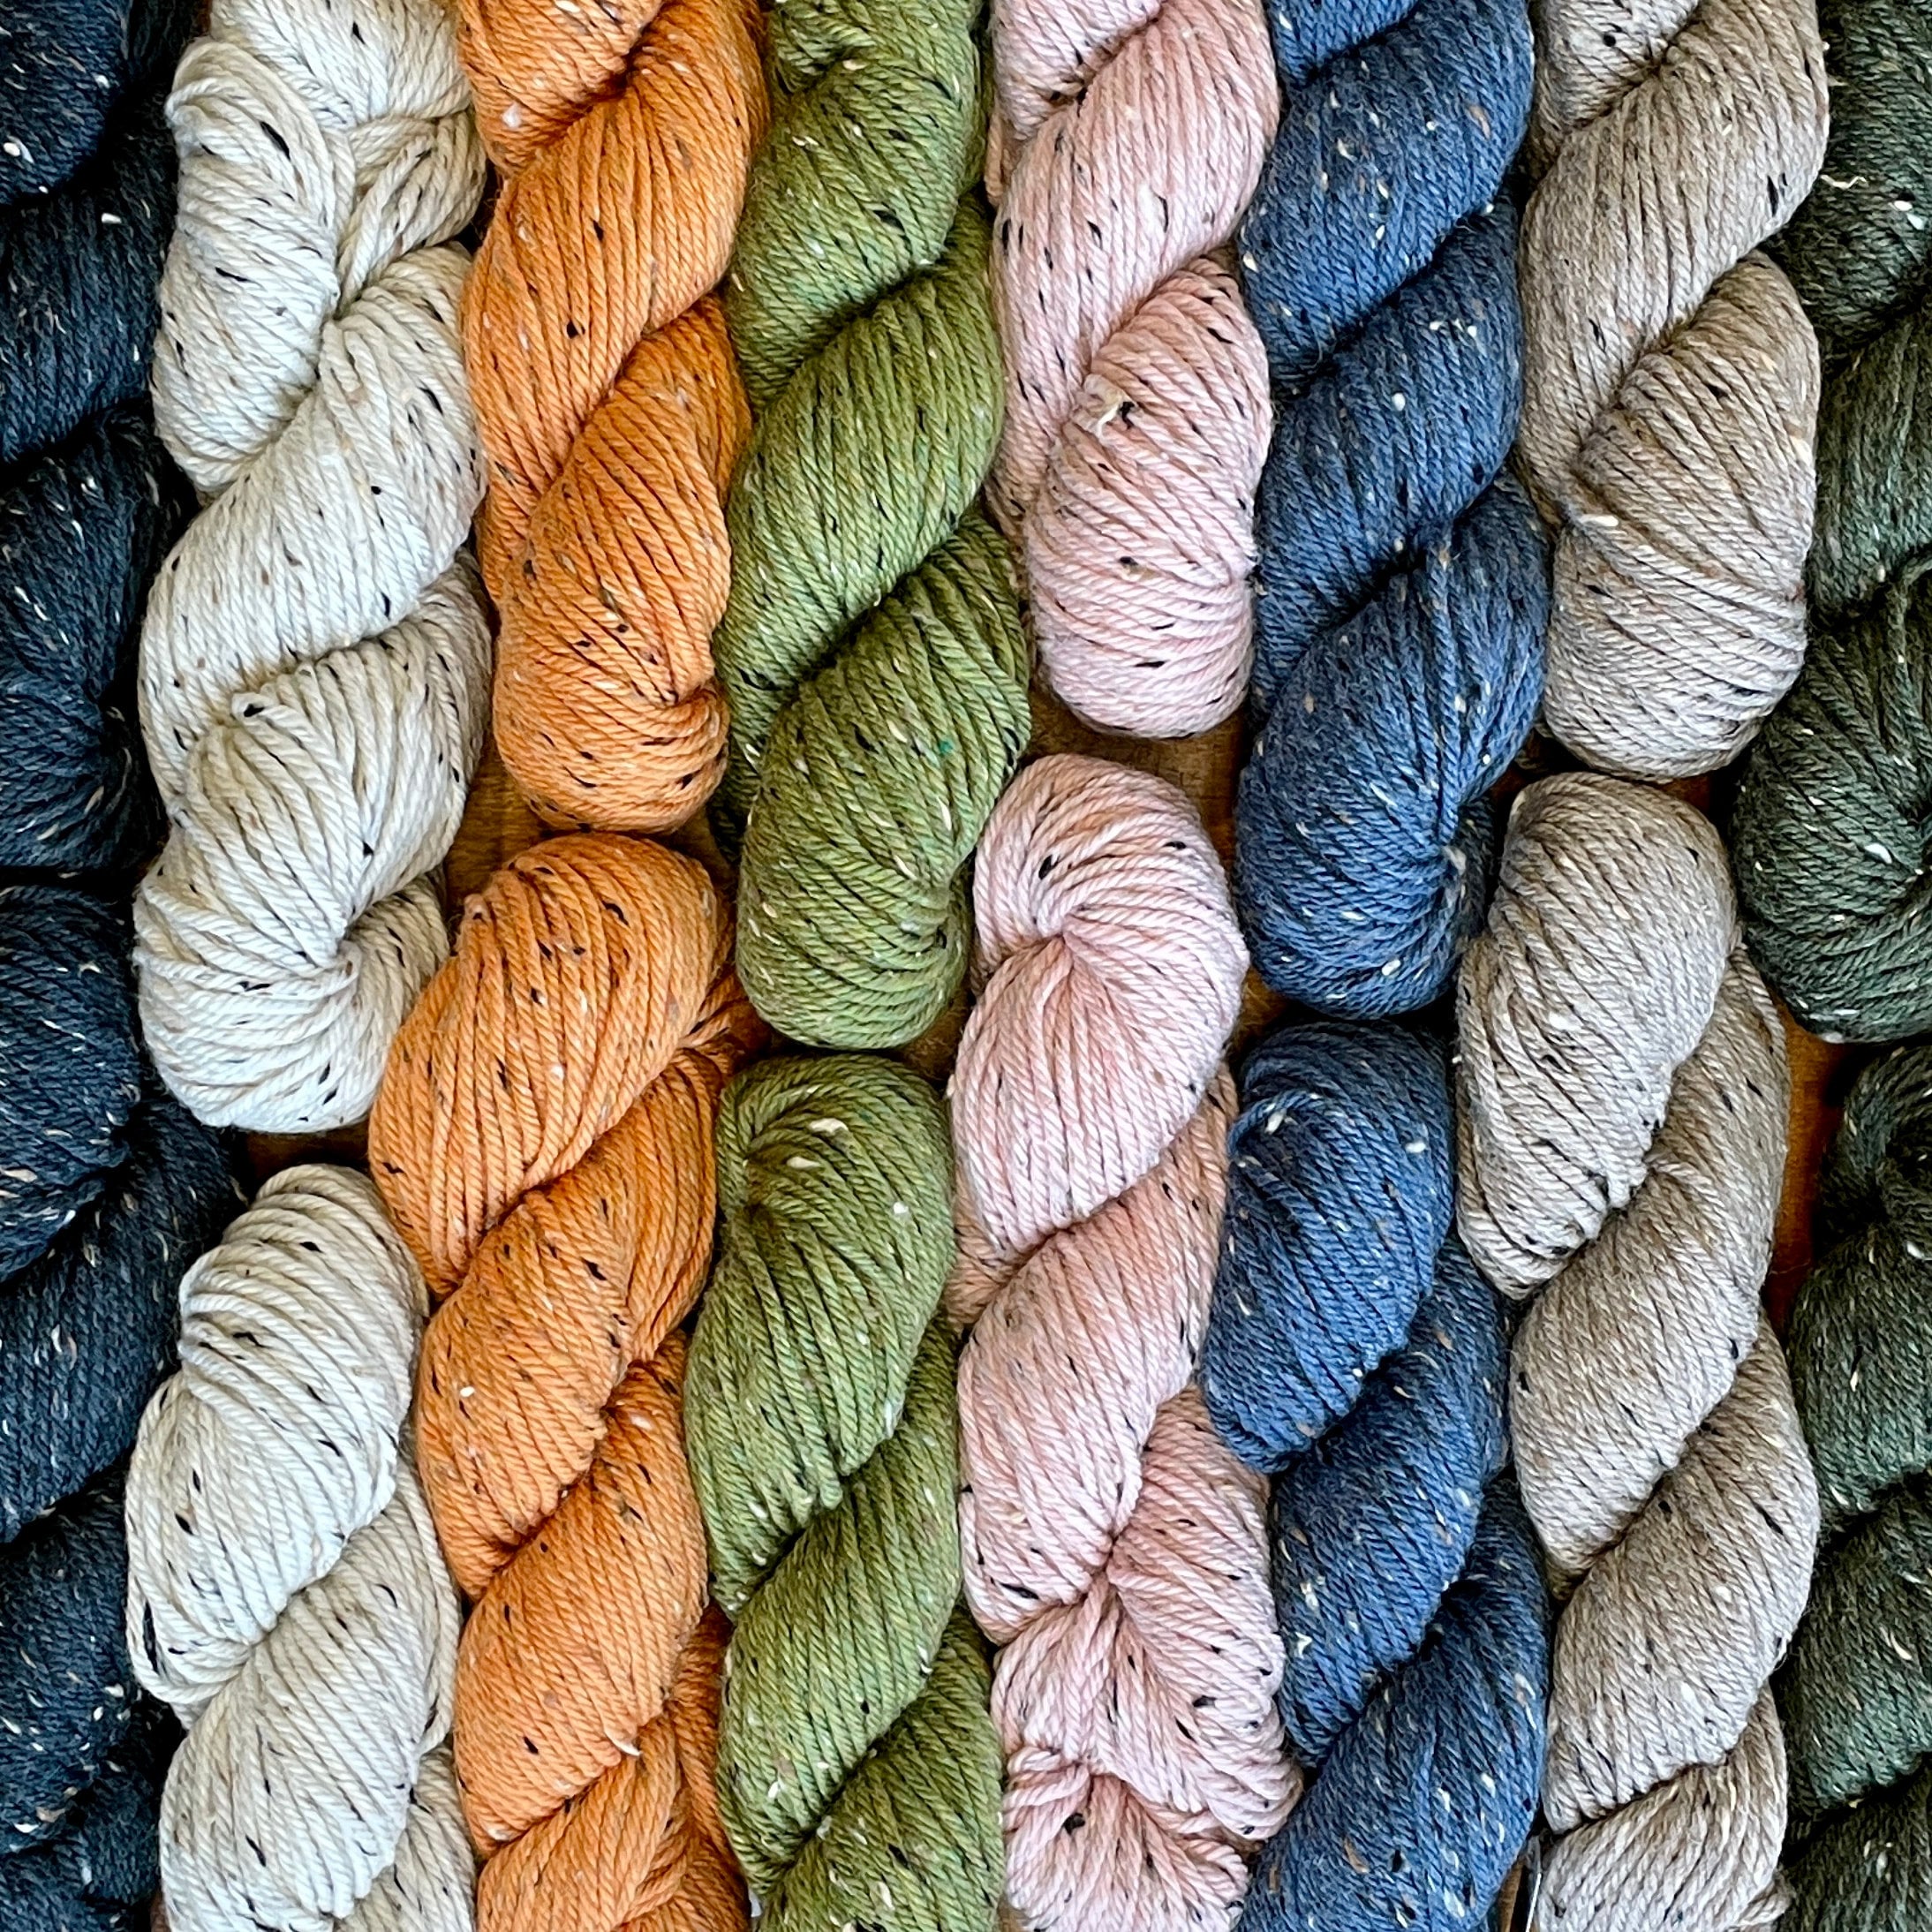 Blue Sky Fibers Woolstok Tweed (Aran) Yarn - 3312 Sage Rose at